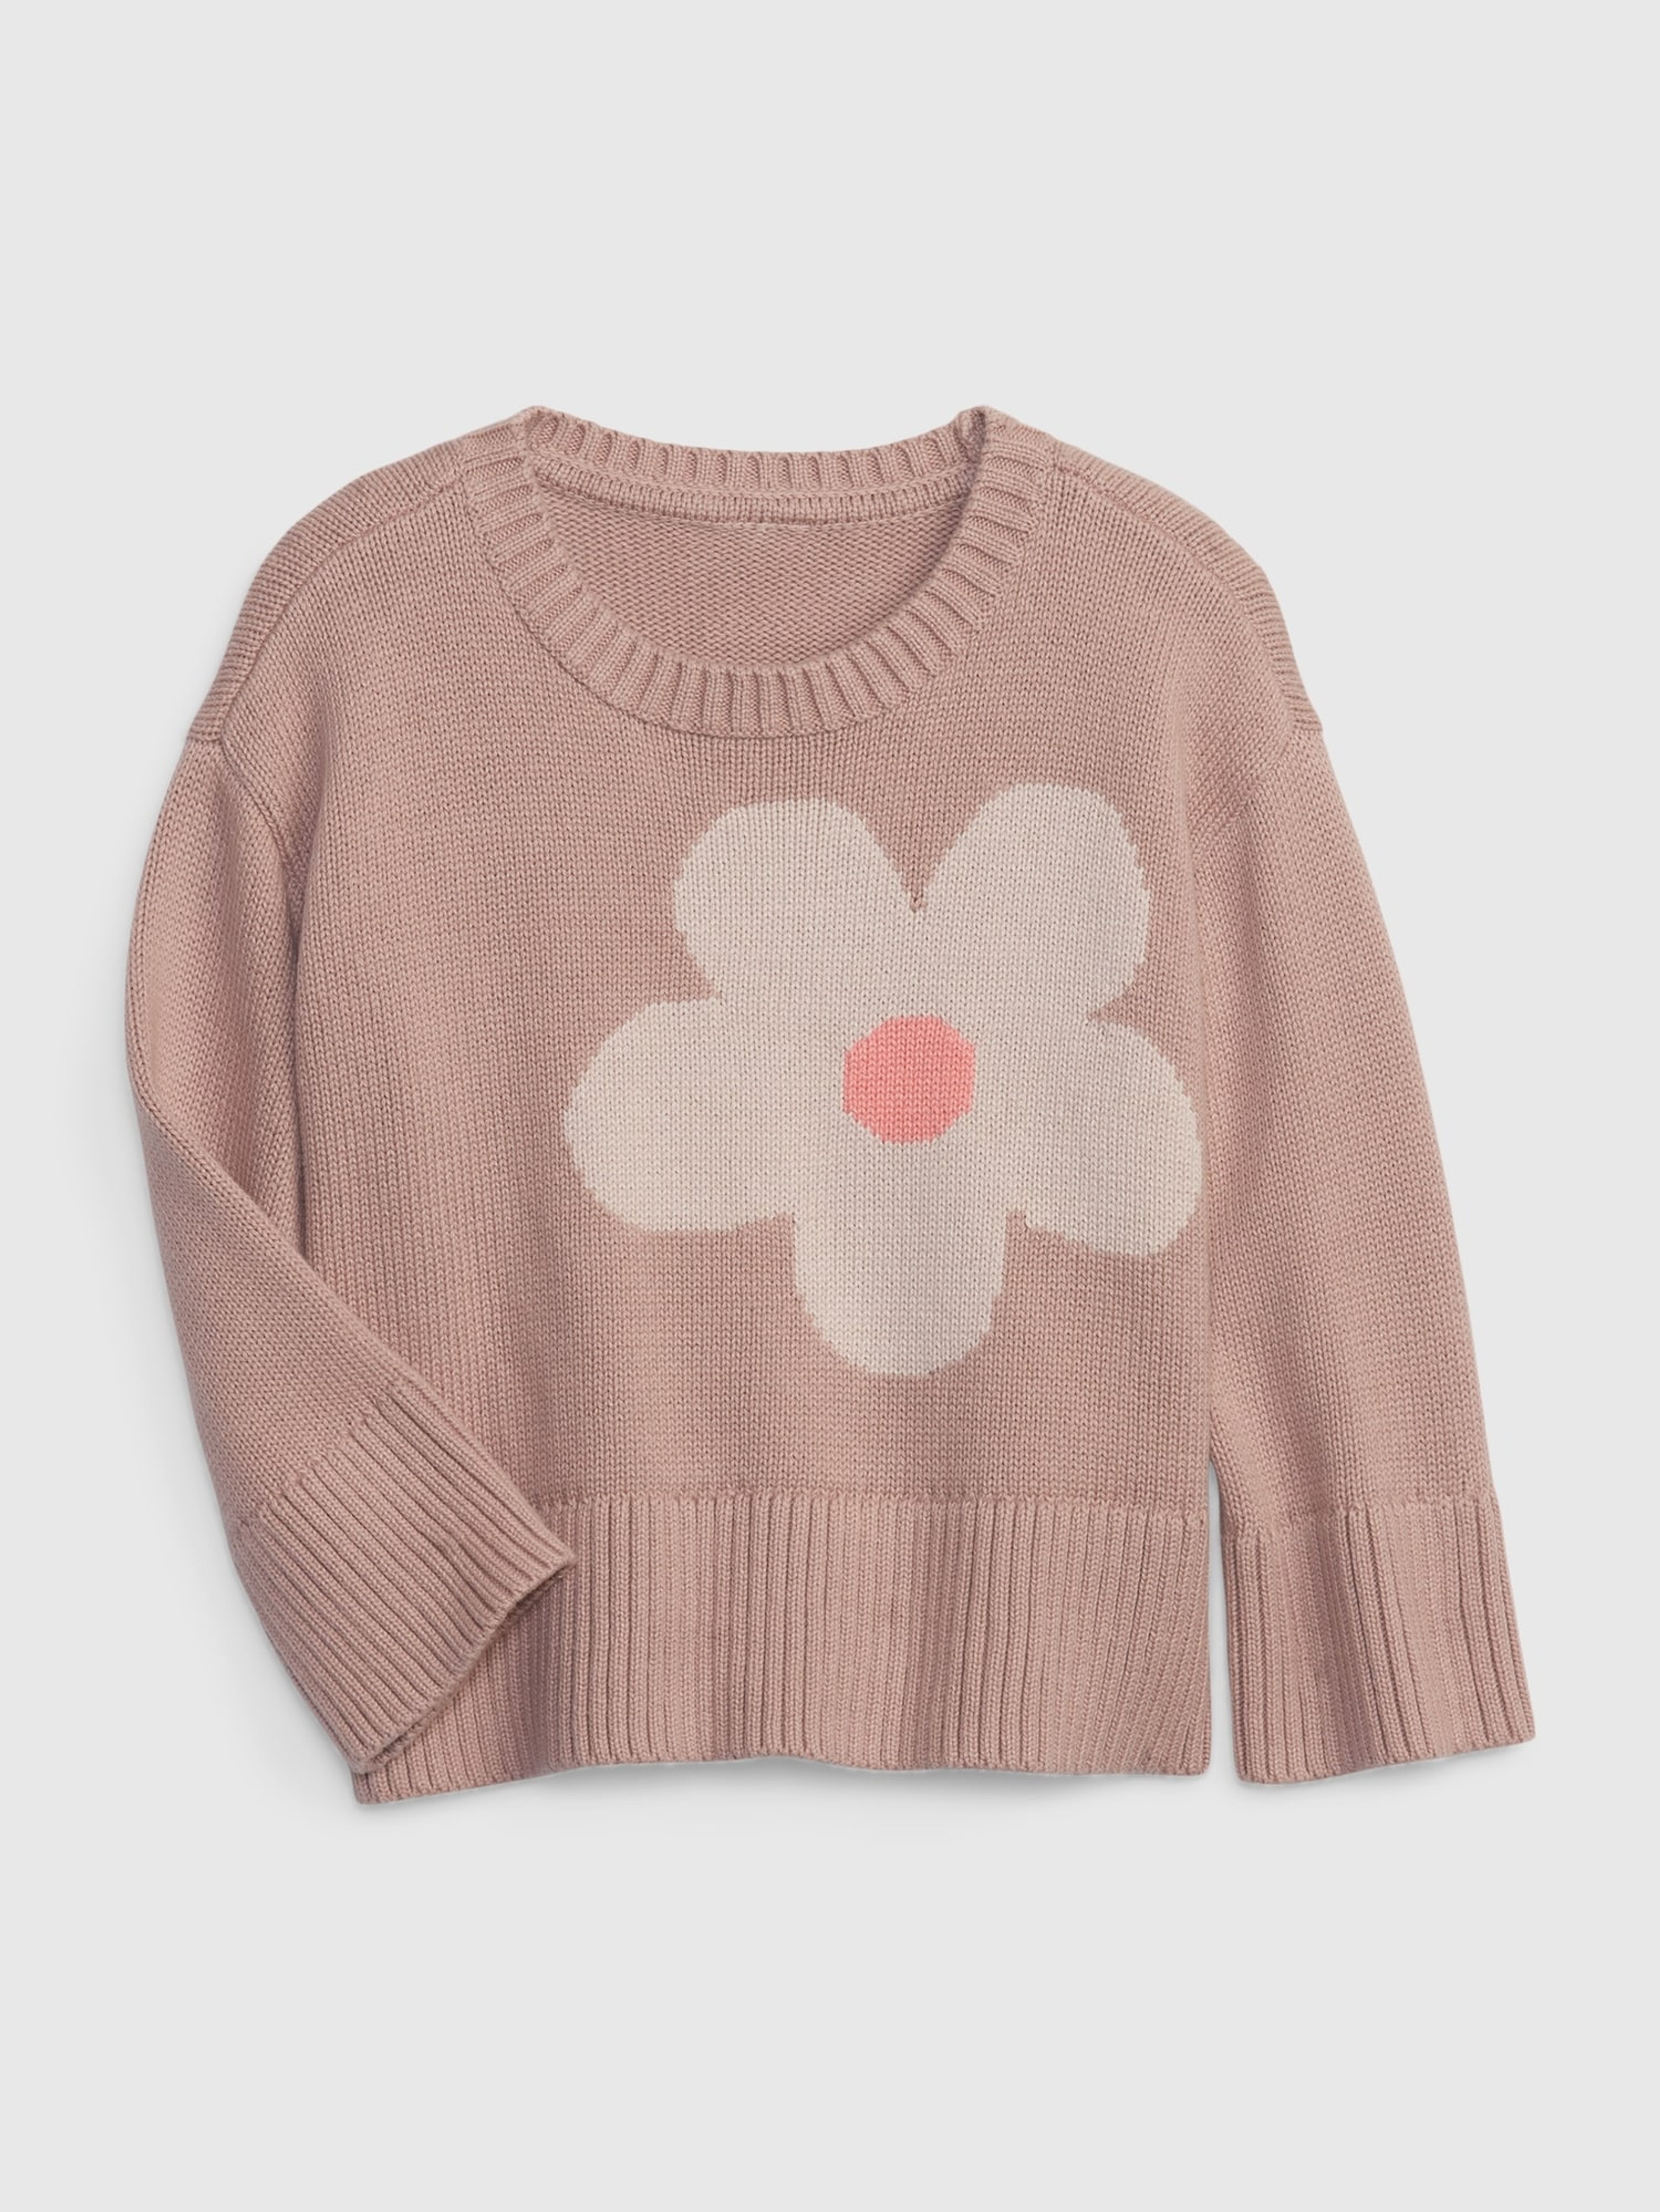 Dětský svetr s květinou